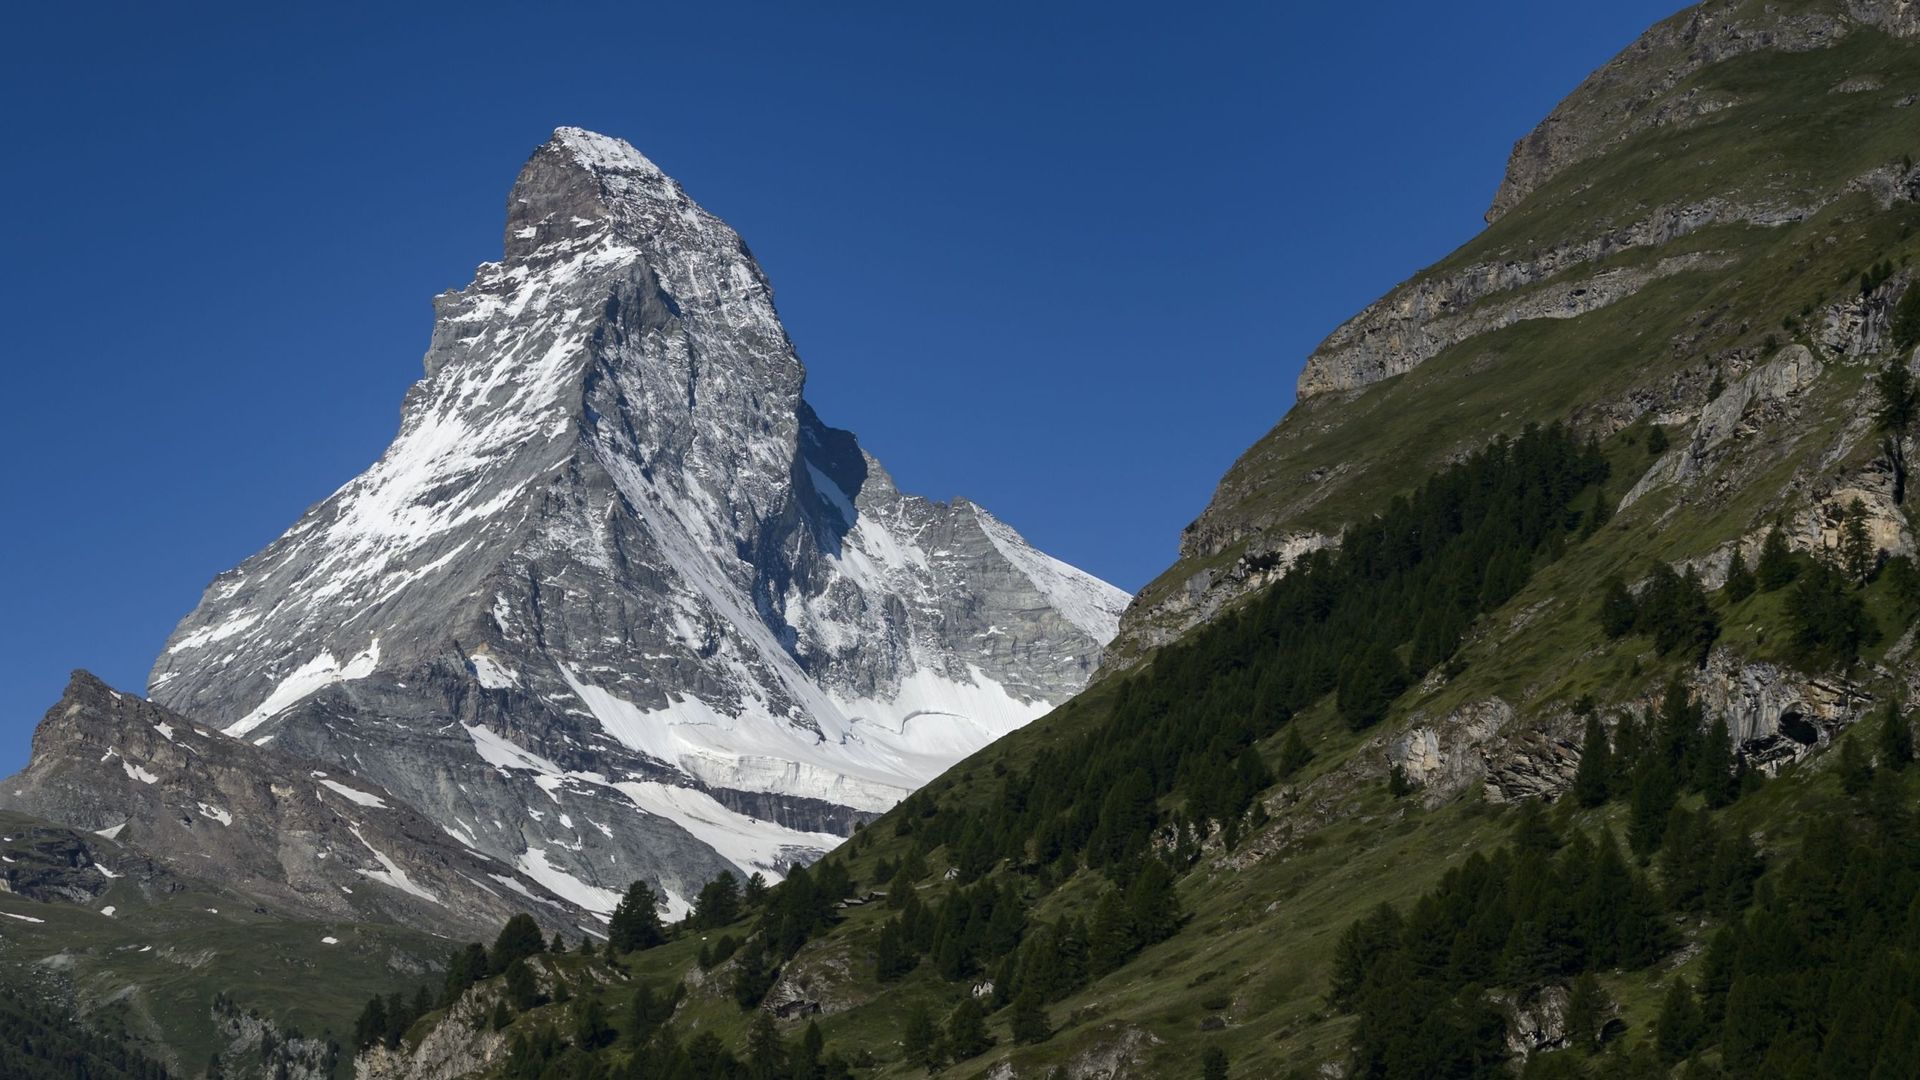 Le Cervin, situé à la frontière italo-suisse, est l'un des sommets les plus hauts des Alpes, avec 4500 mètres. Le température atteignait -10° lorsqu'ils ont été retrouvés.